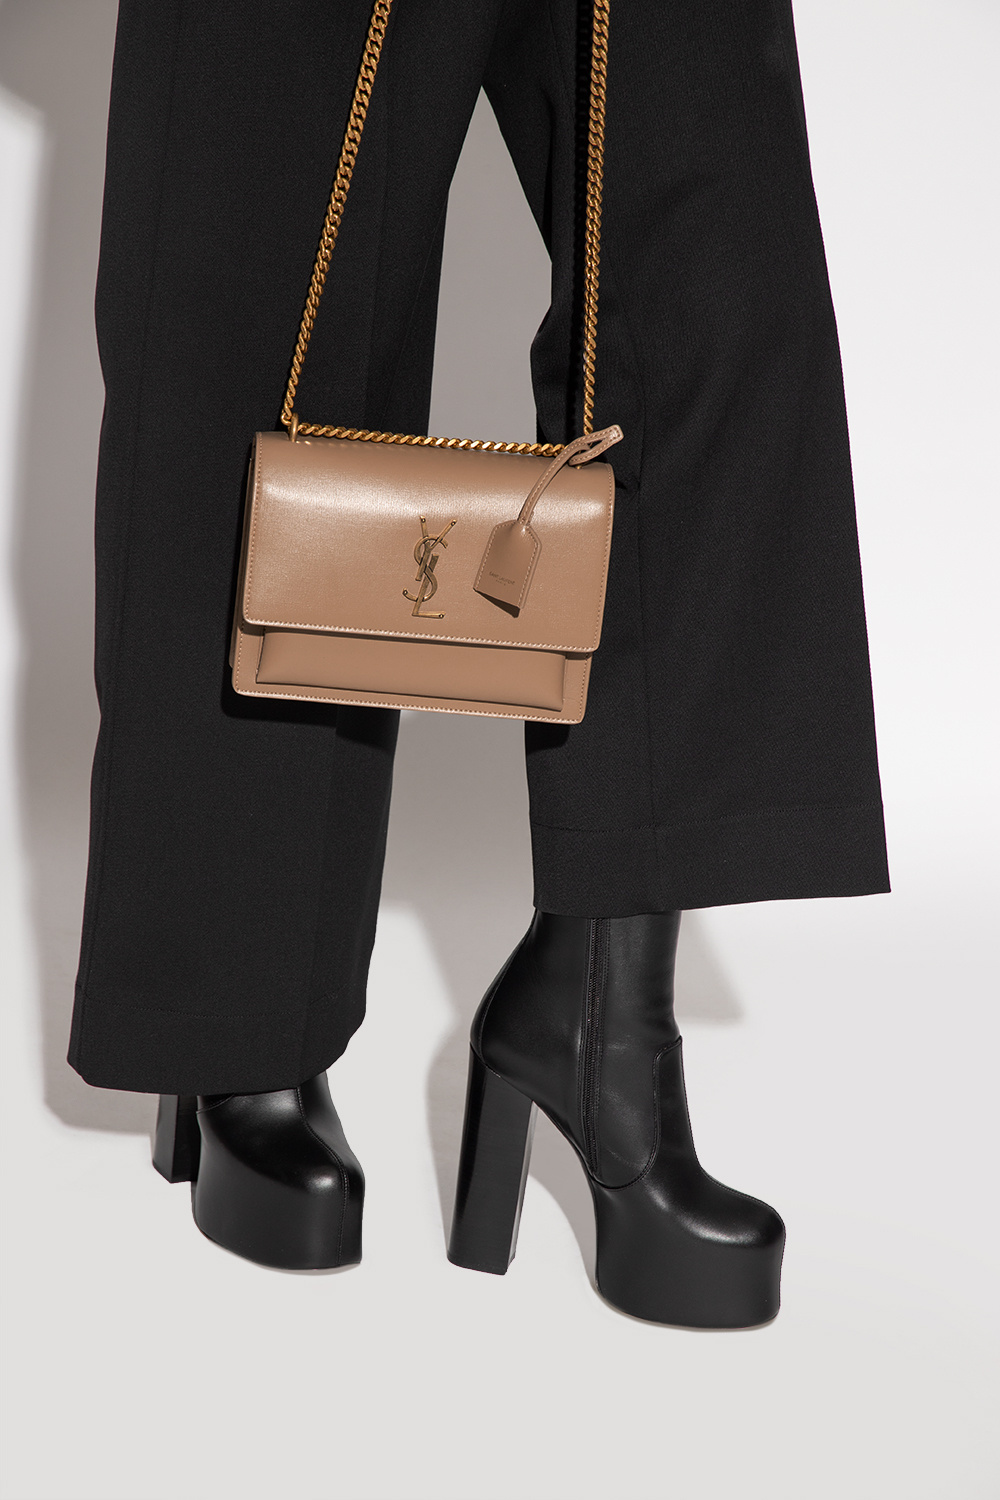 Saint Laurent Sunset Medium Leather Shoulder Bag in Brown